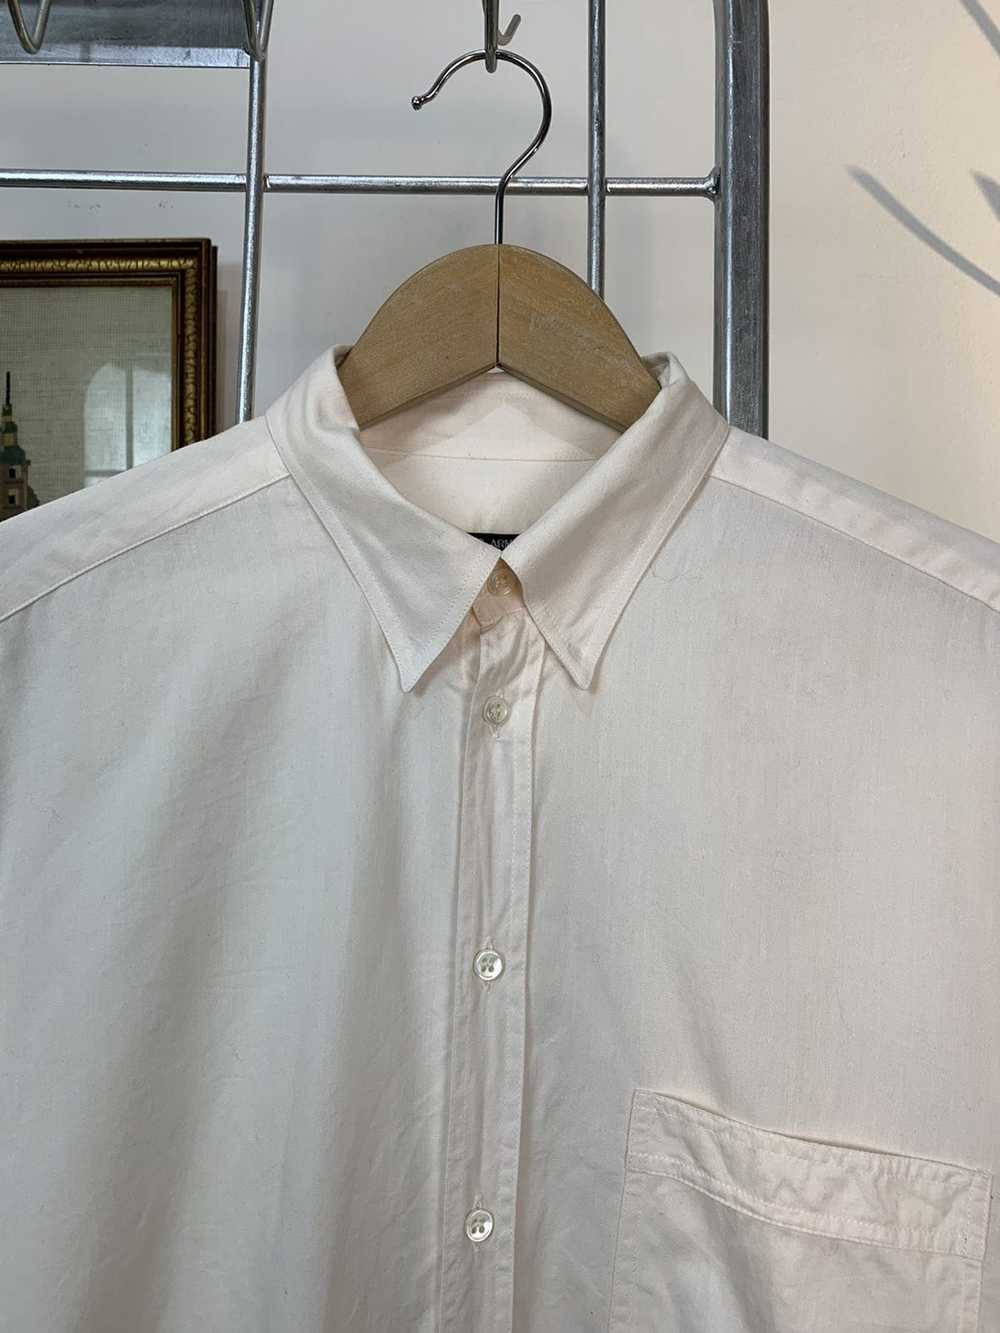 Giorgio Armani Giorgio Armani off white shirt - image 3